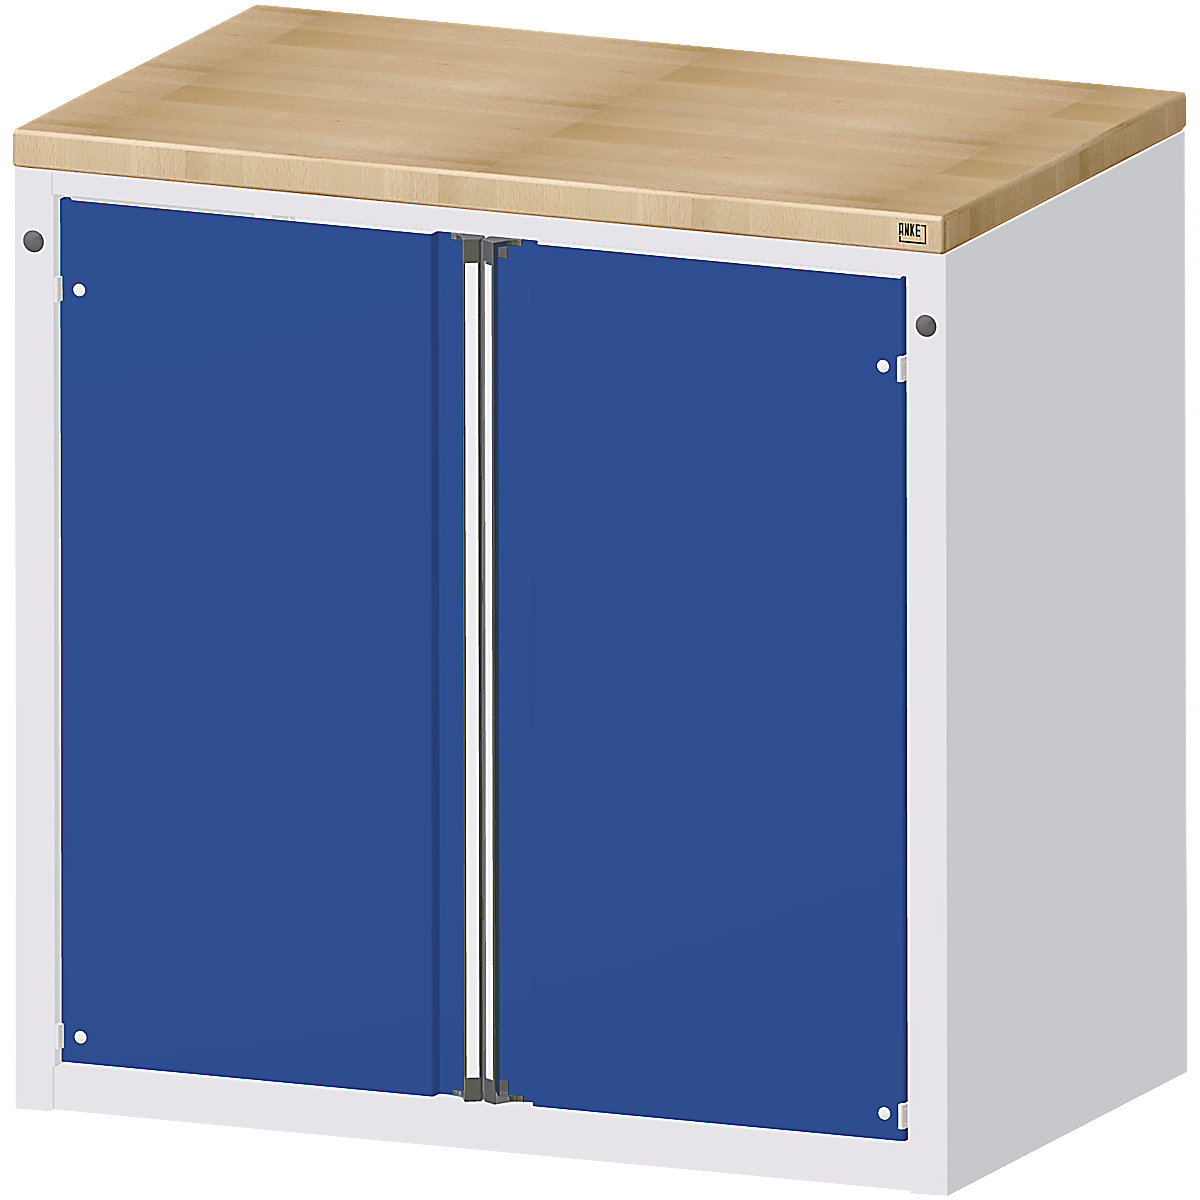 ANKE – Armario para mostrador para dispensar herramientas y material, 2 puertas, 2 baldas, gris / azul